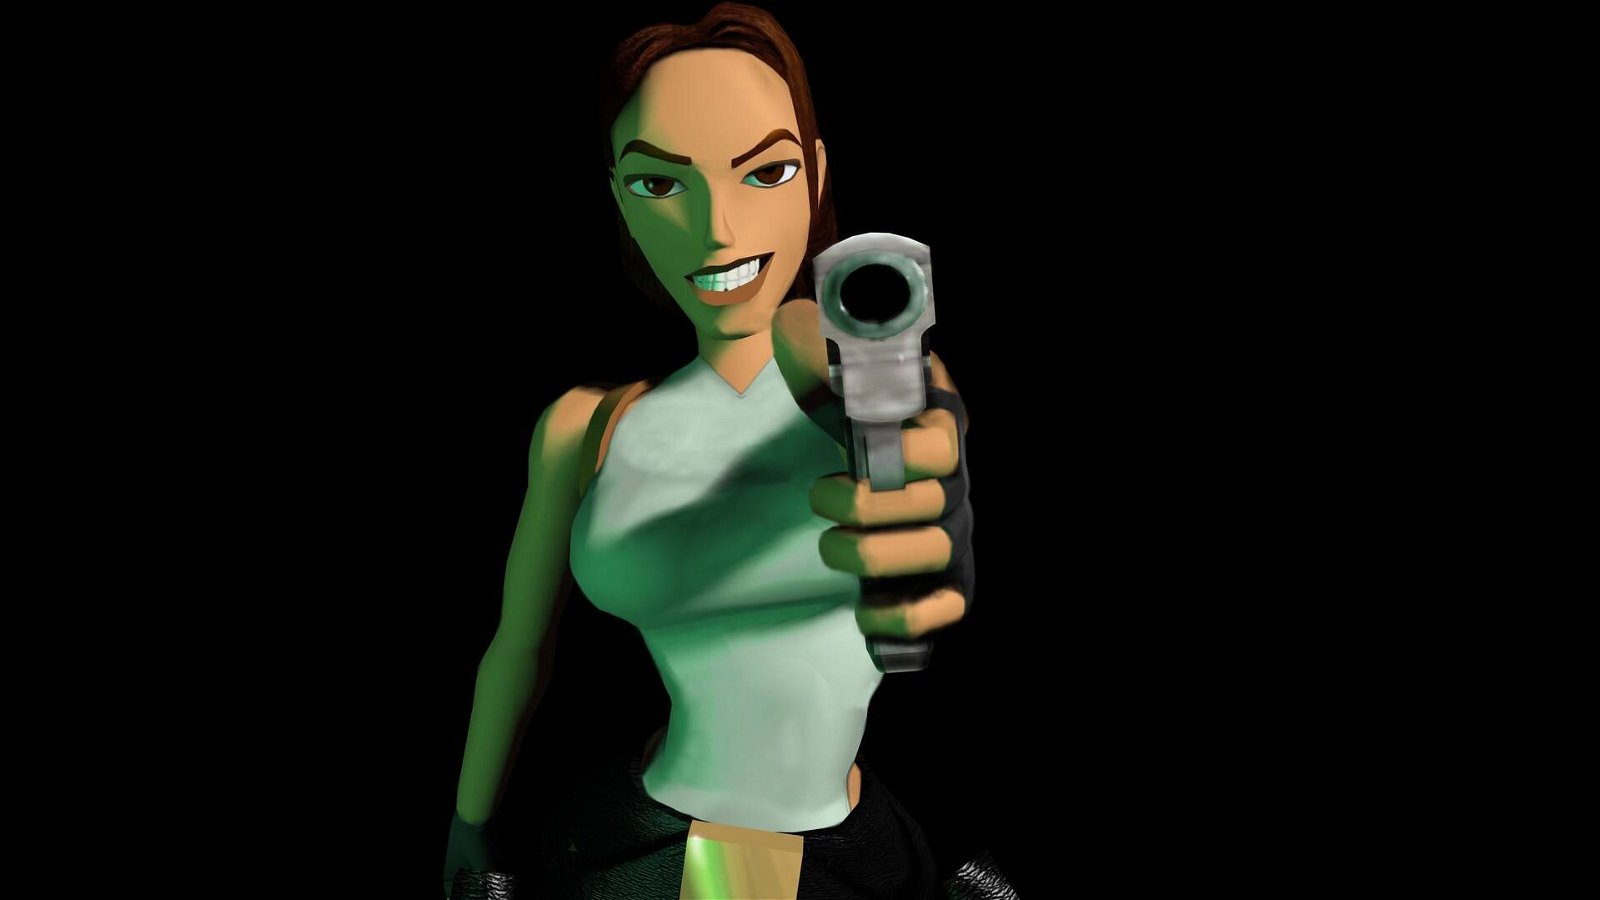 Immagine di Giochi gratis PC: Square-Enix regala due titoli con Lara Croft